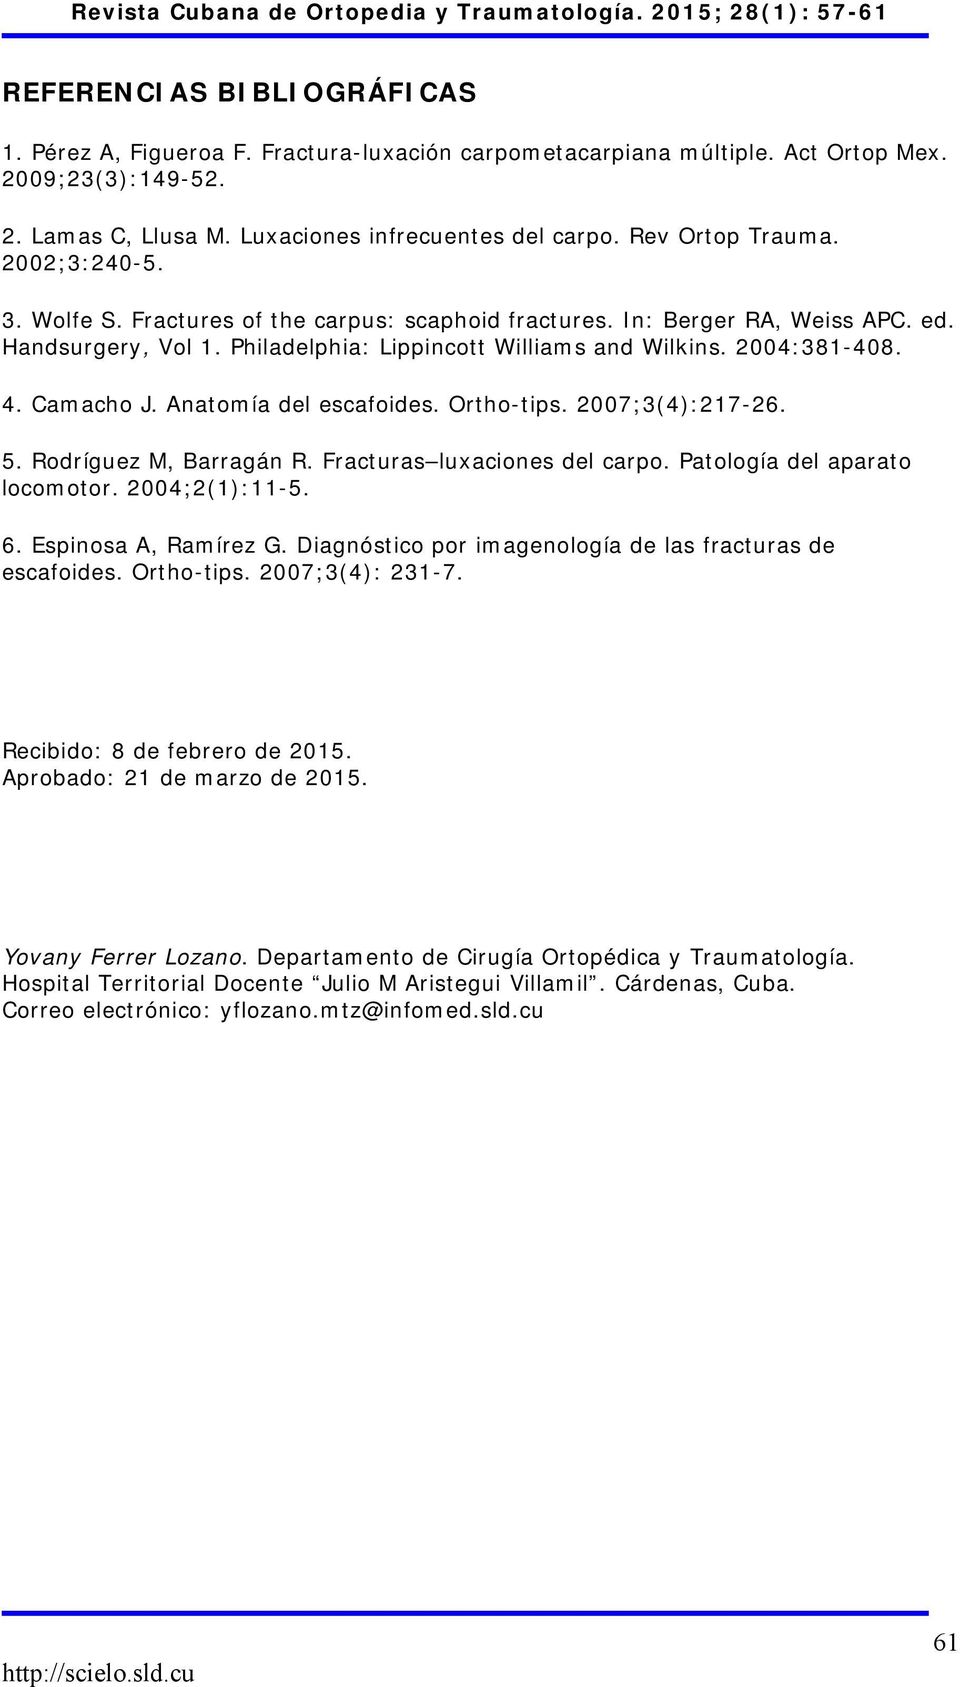 4. Camacho J. Anatomía del escafoides. Ortho-tips. 2007;3(4):217-26. 5. Rodríguez M, Barragán R. Fracturas luxaciones del carpo. Patología del aparato locomotor. 2004;2(1):11-5. 6.